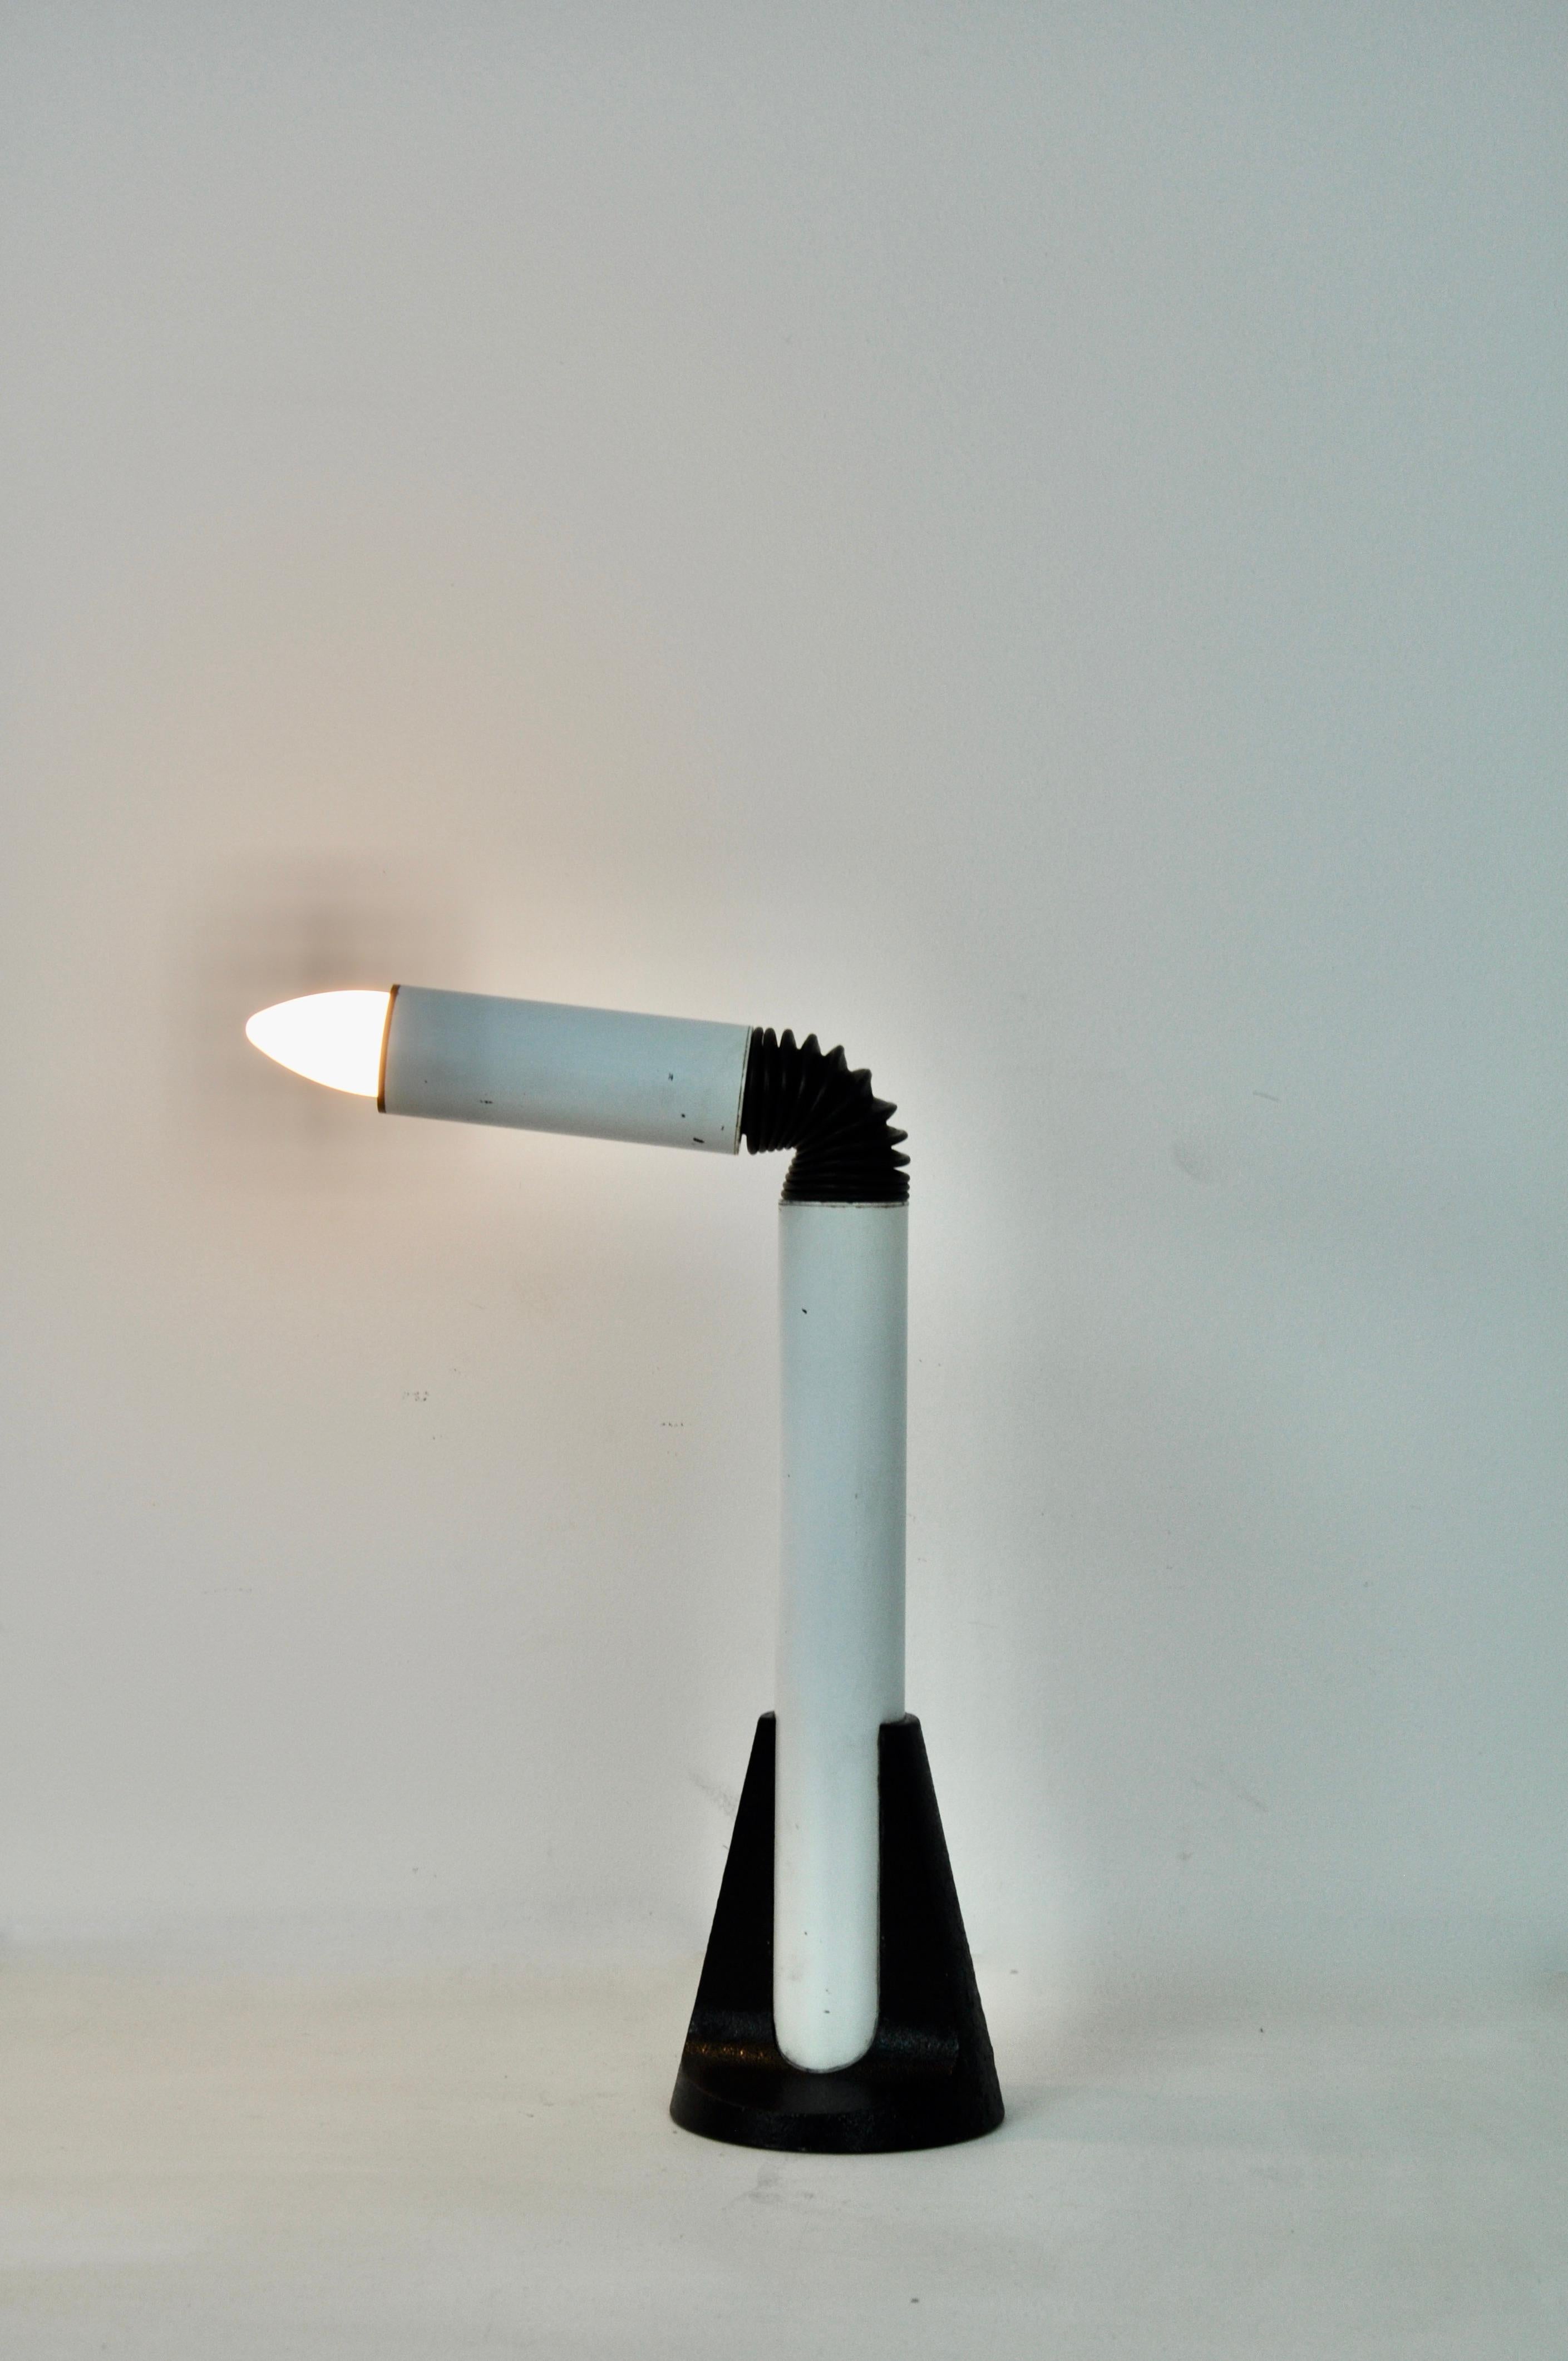 Lampe en métal de couleur blanche et noire. Usure due au temps et à l'âge de la lampe (voir photo).